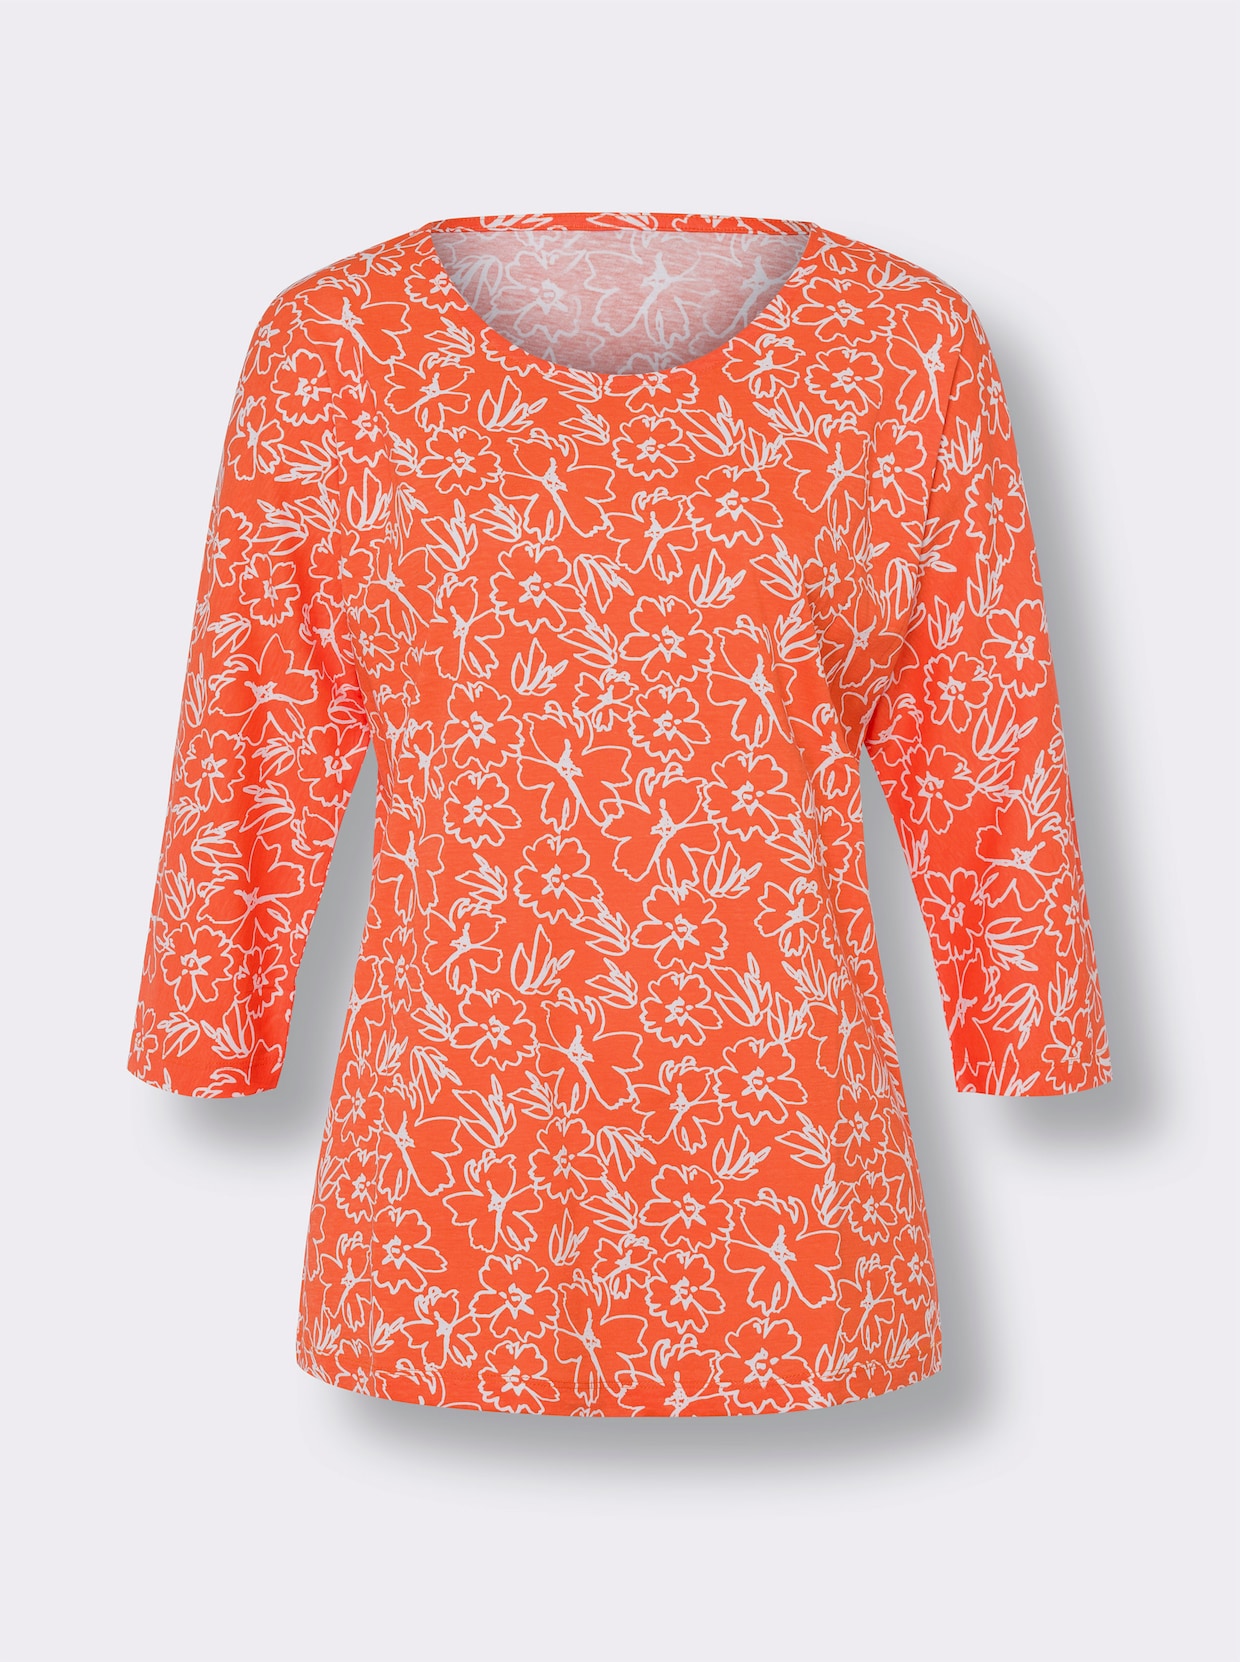 Voľnočasové tričko - Oranžovoá-svetlobéžová potlač